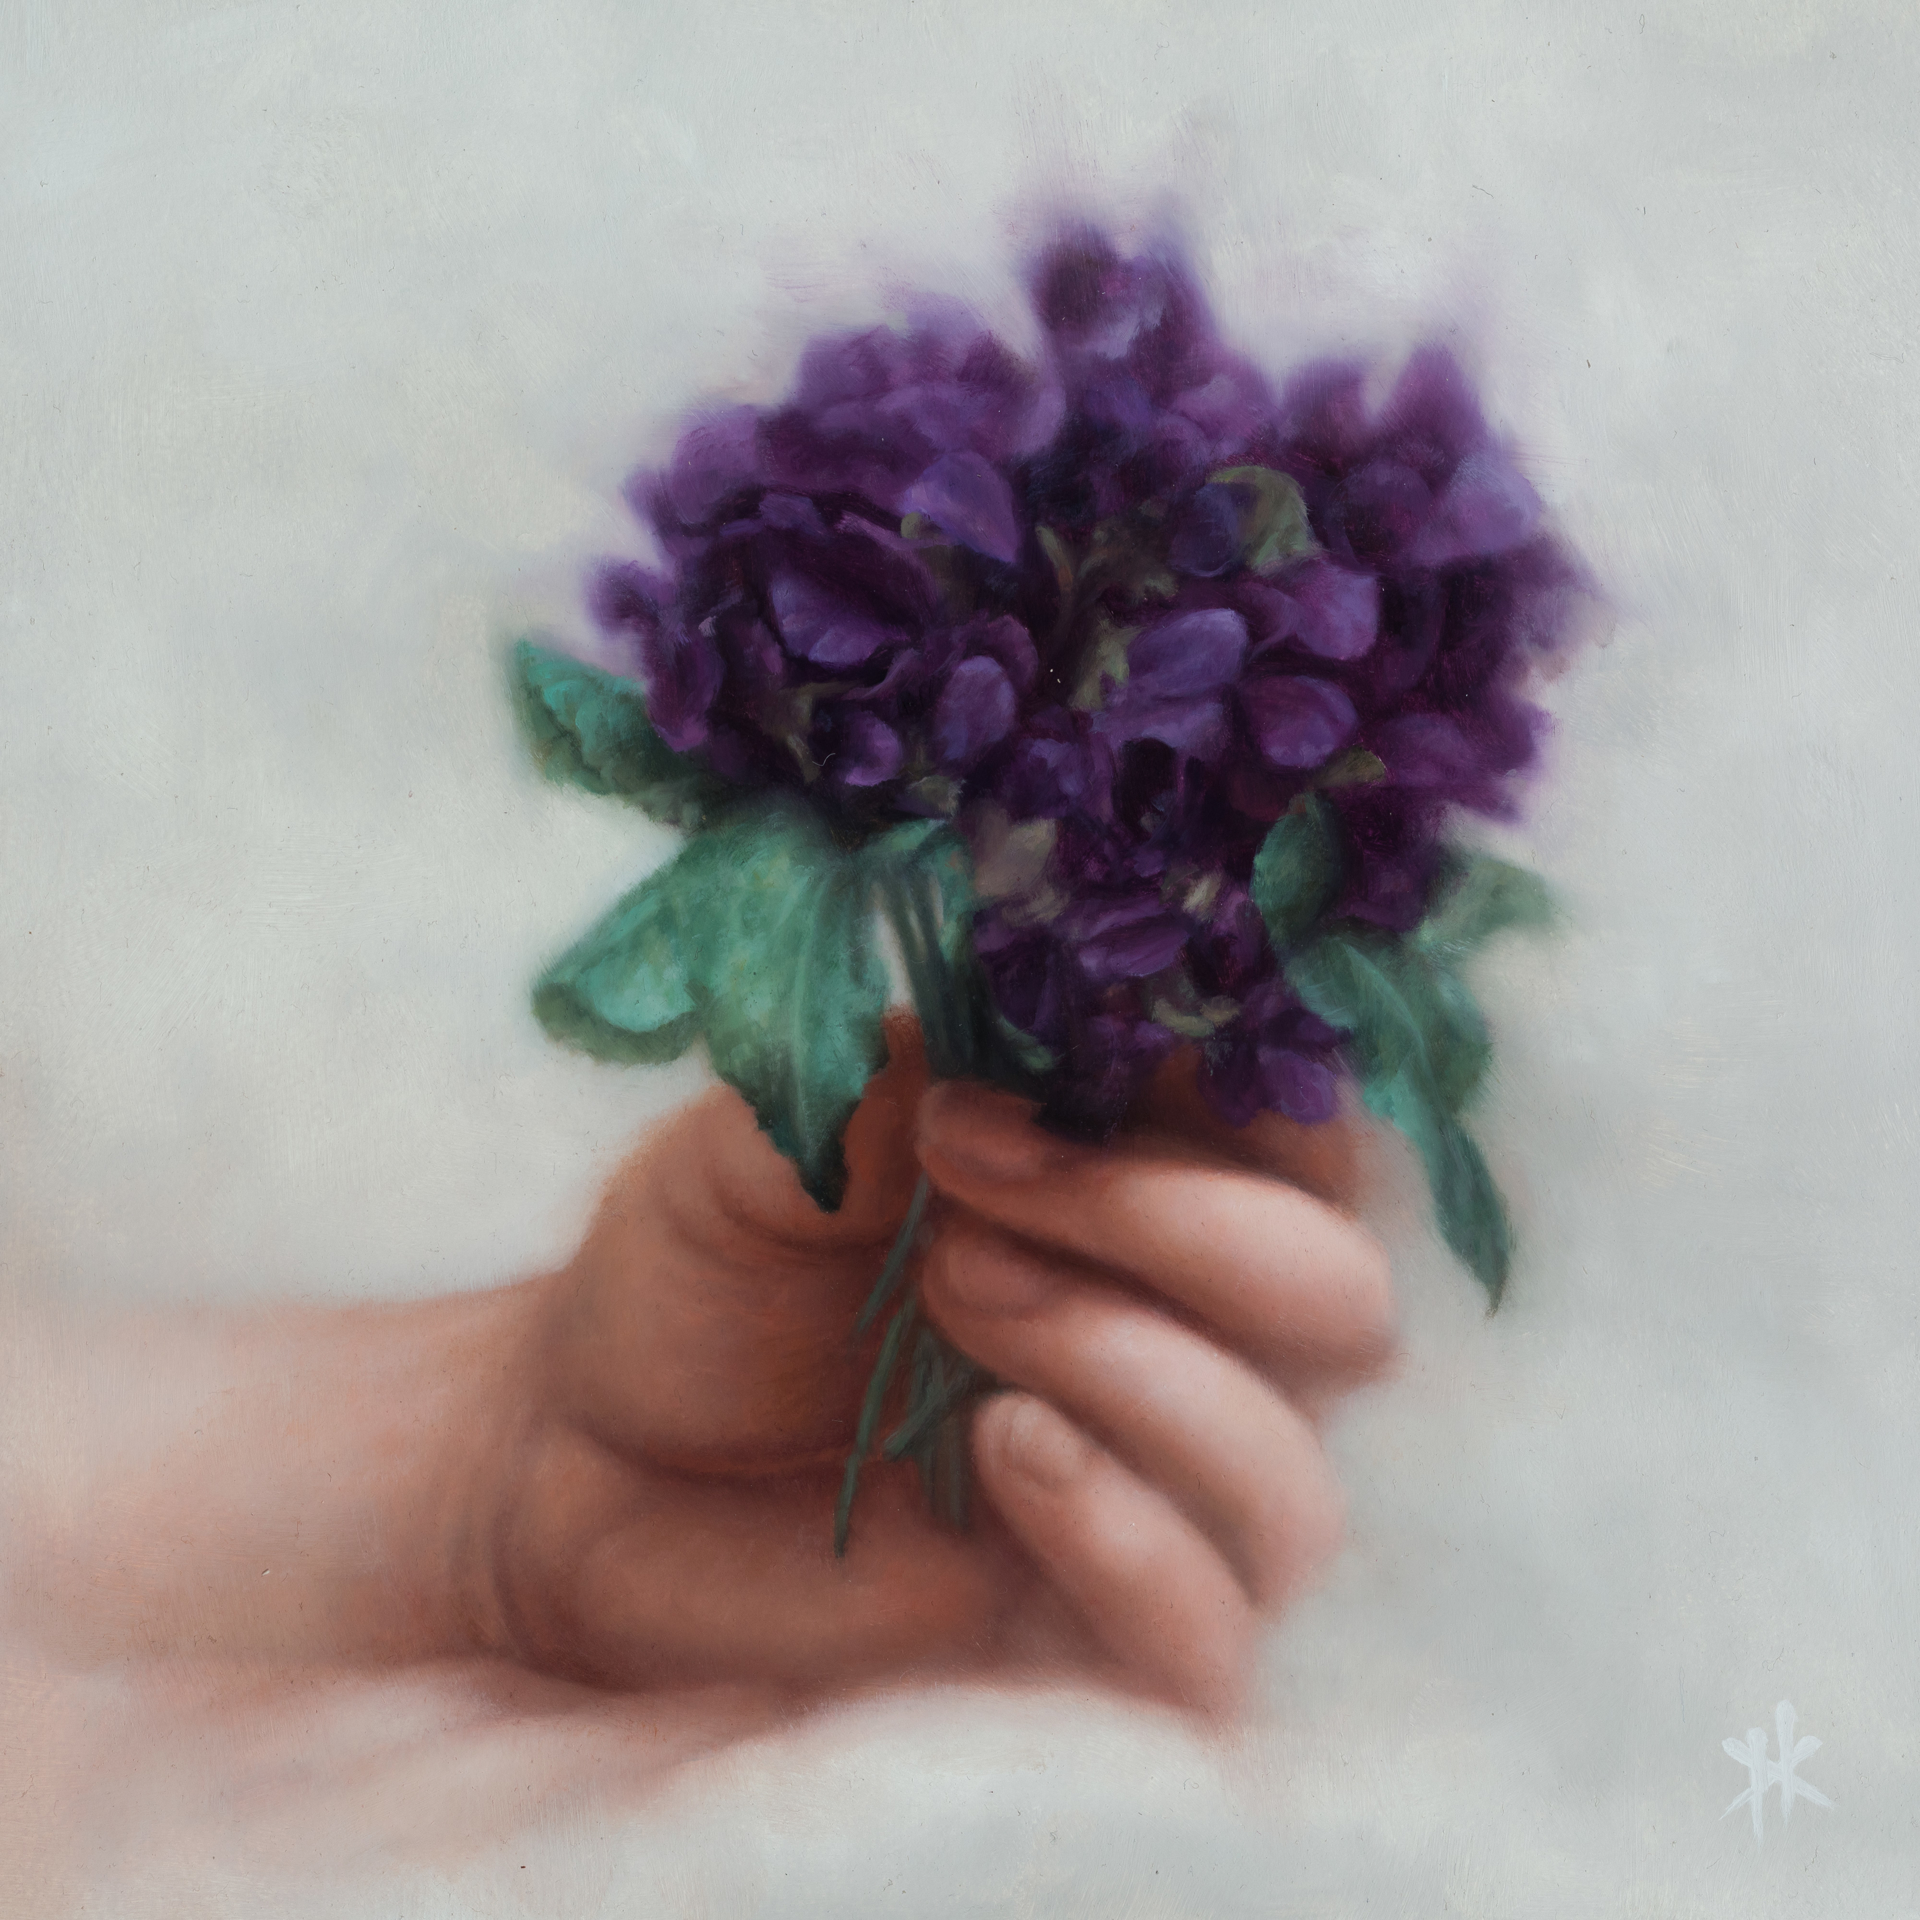 Violets by Patrick Kramer